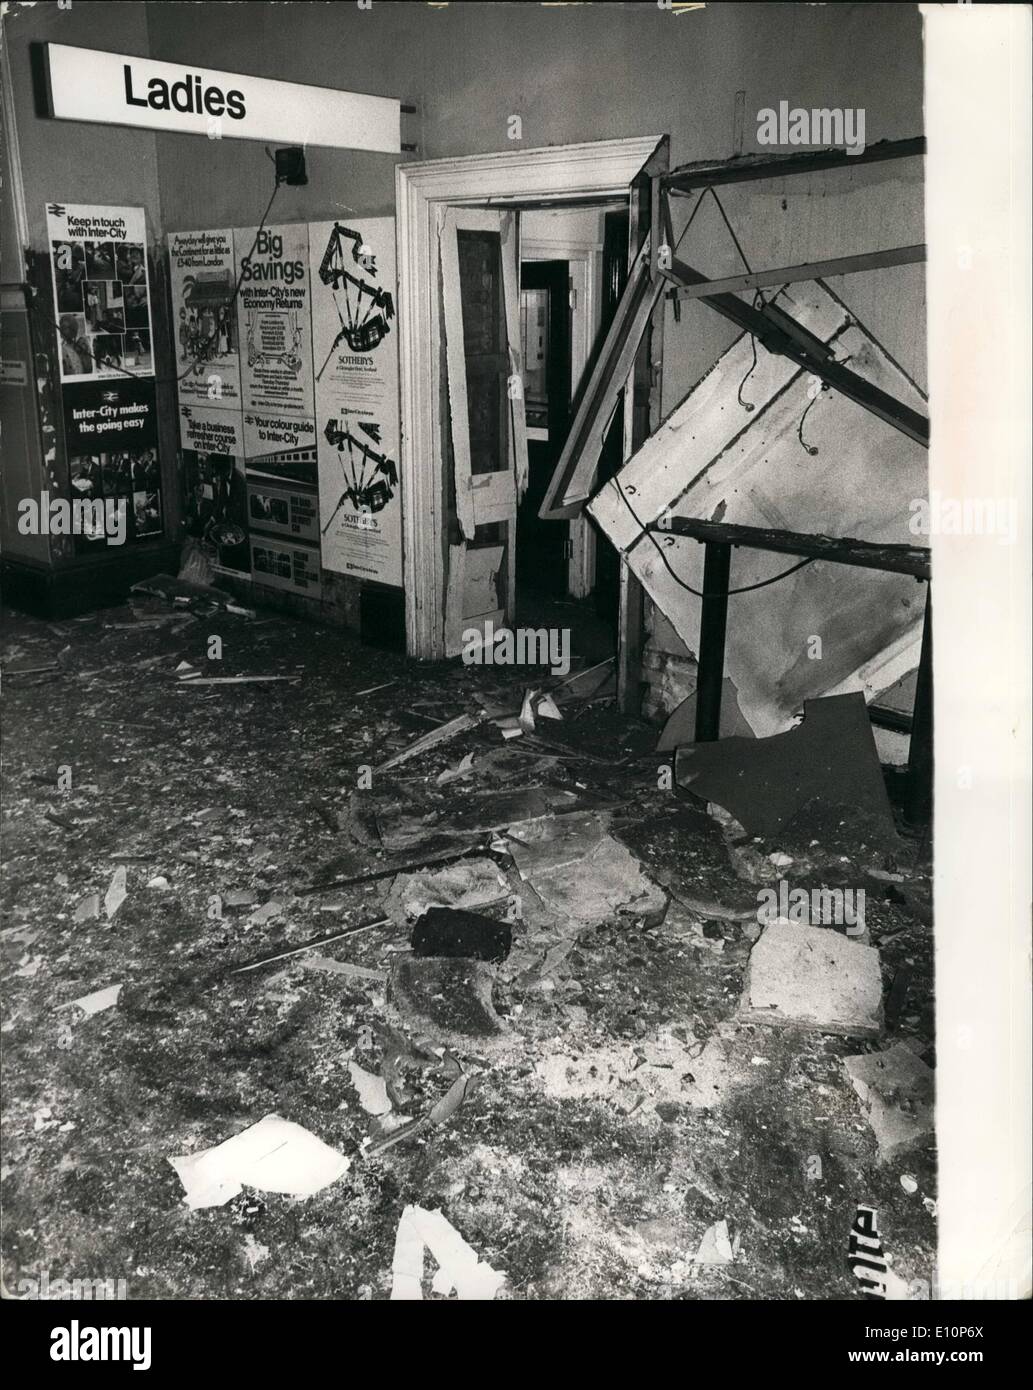 Sett. 09, 1973 - esplosione di bomba alla stazione di King Cross. Ci sono state delle esplosioni di bombe a due di Londra principale stazioni ferroviarie di King''s Cross e Euston. Keystone Mostra fotografica di:- La scena che mostra i danni alla stazione di King Cross dopo l esplosione. Foto Stock